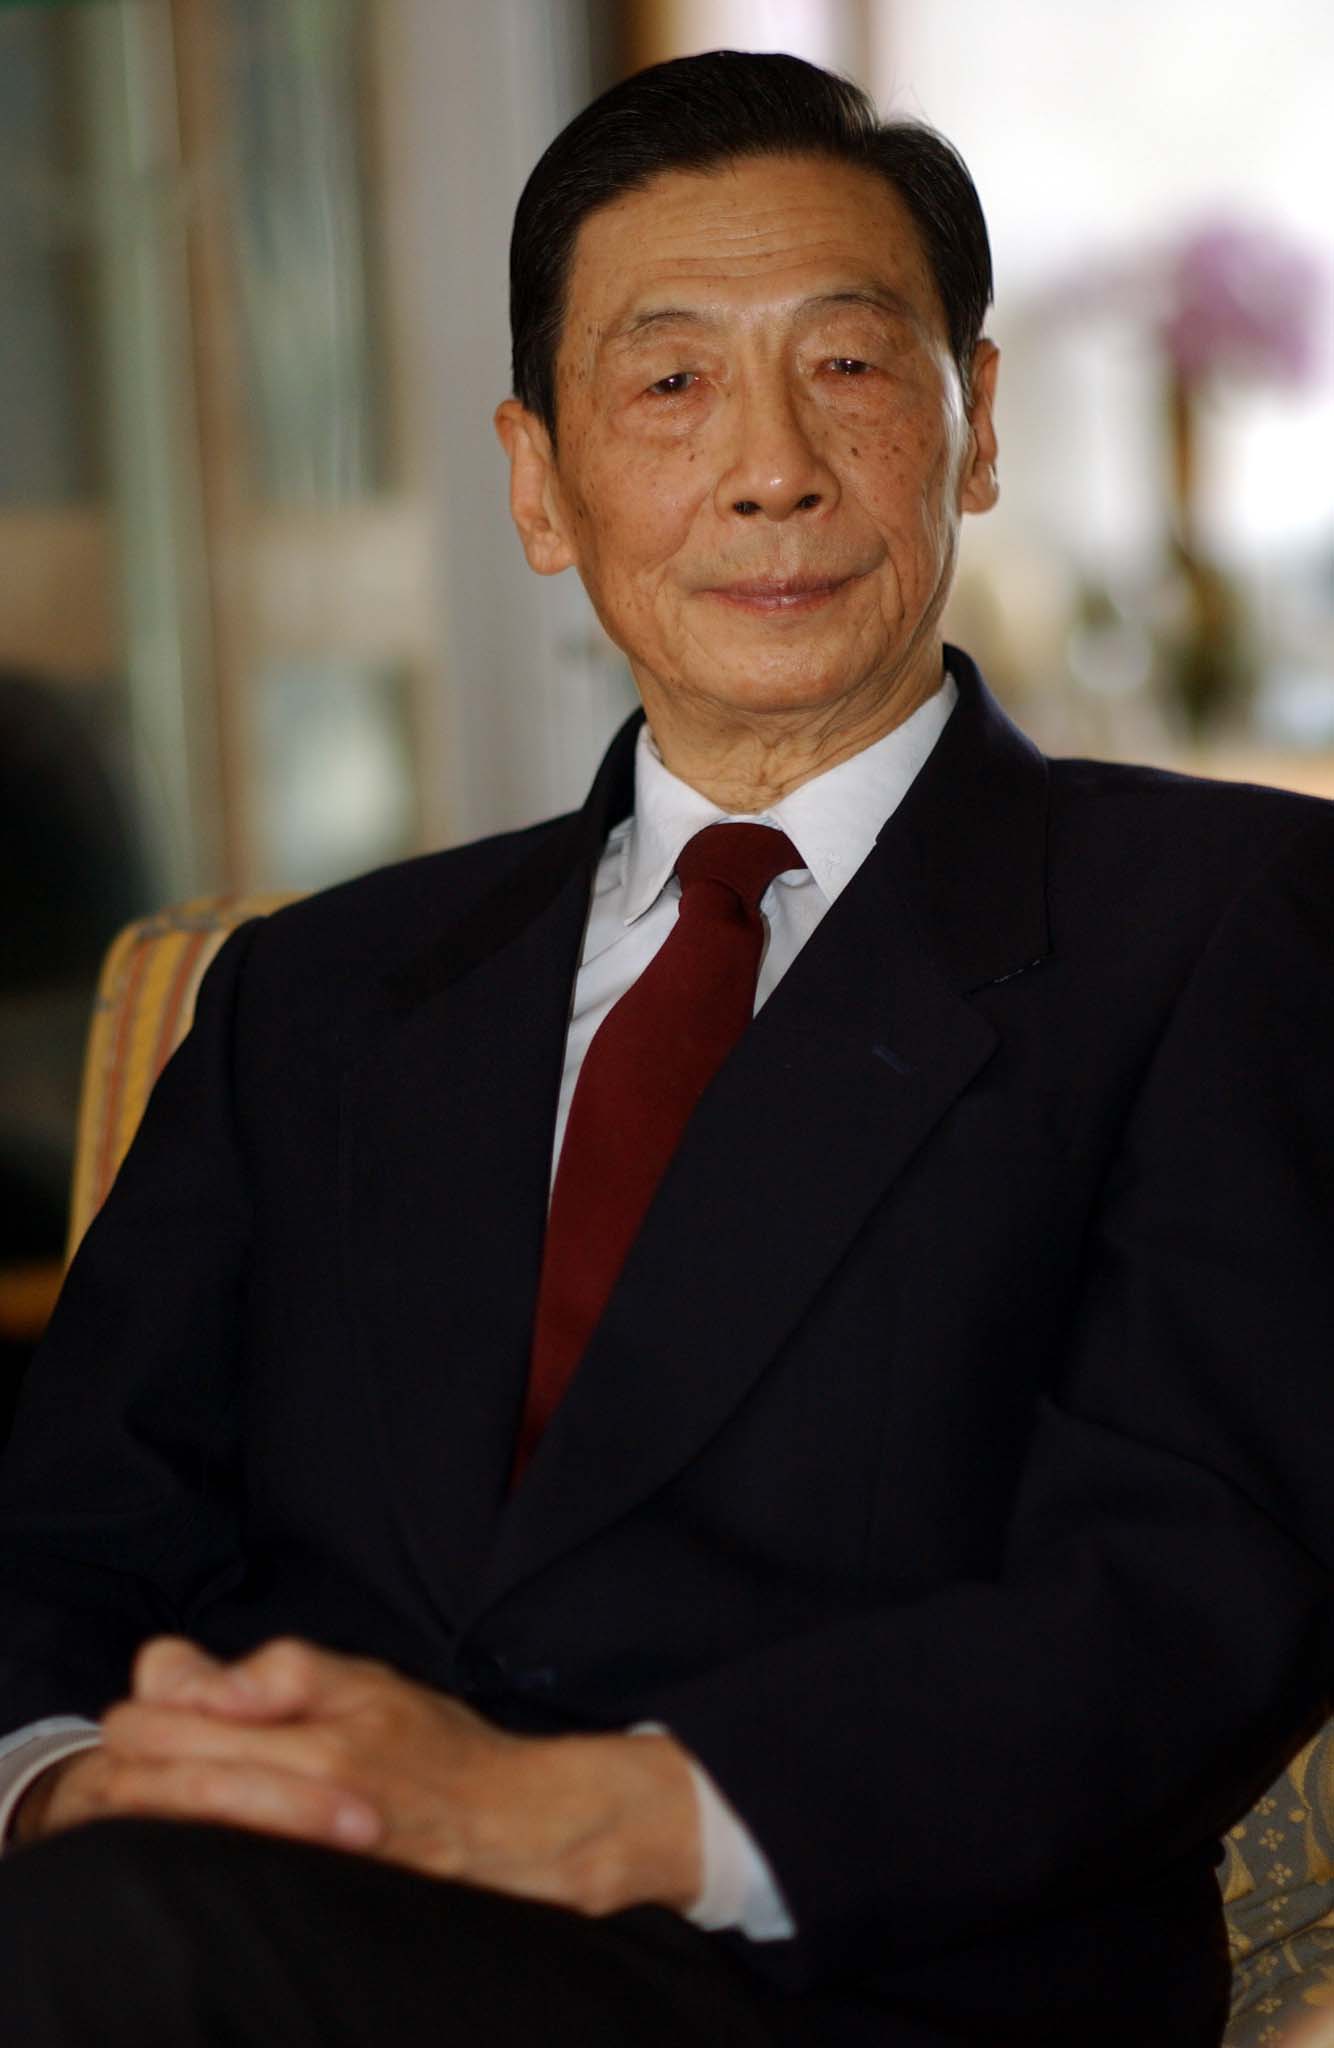 中国四大经济学家之一茅于轼教授于11月26号在广州参加经济论坛